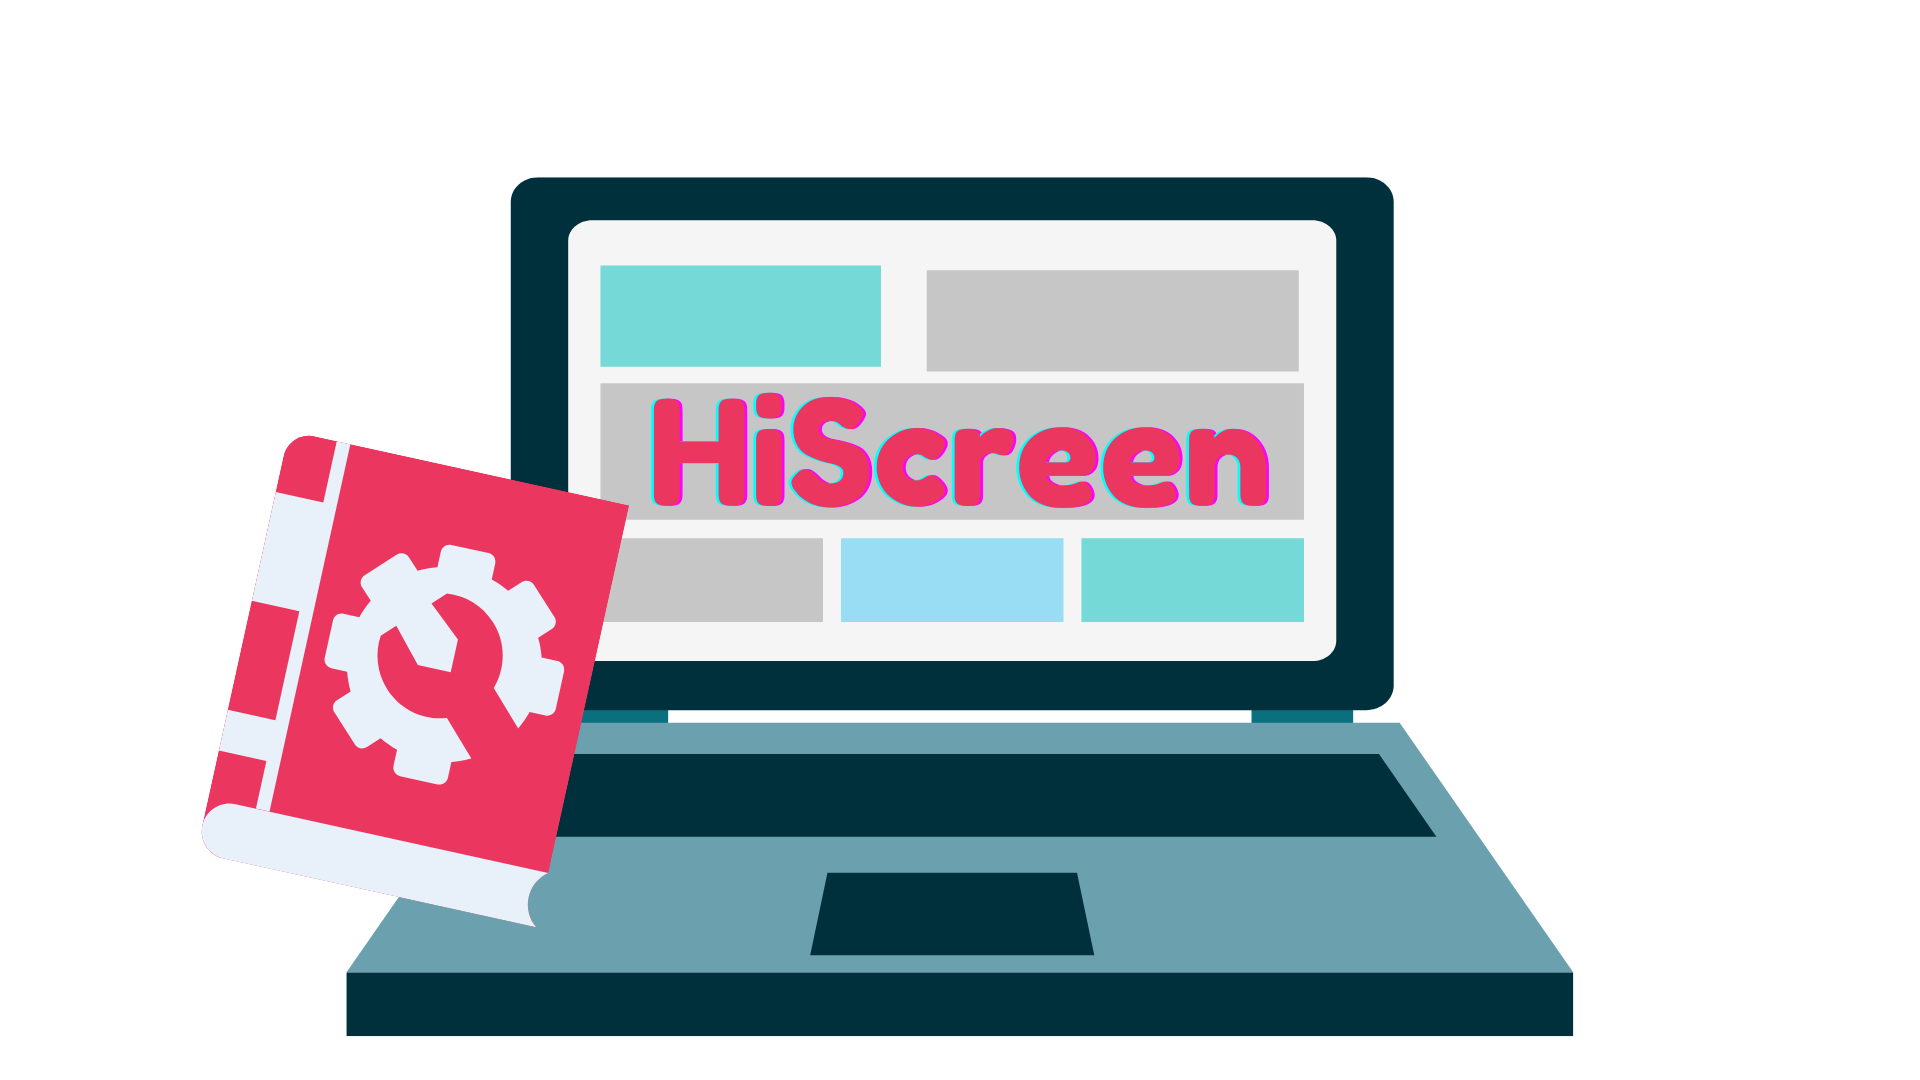 Portátil com HiScreen com manual de instruções